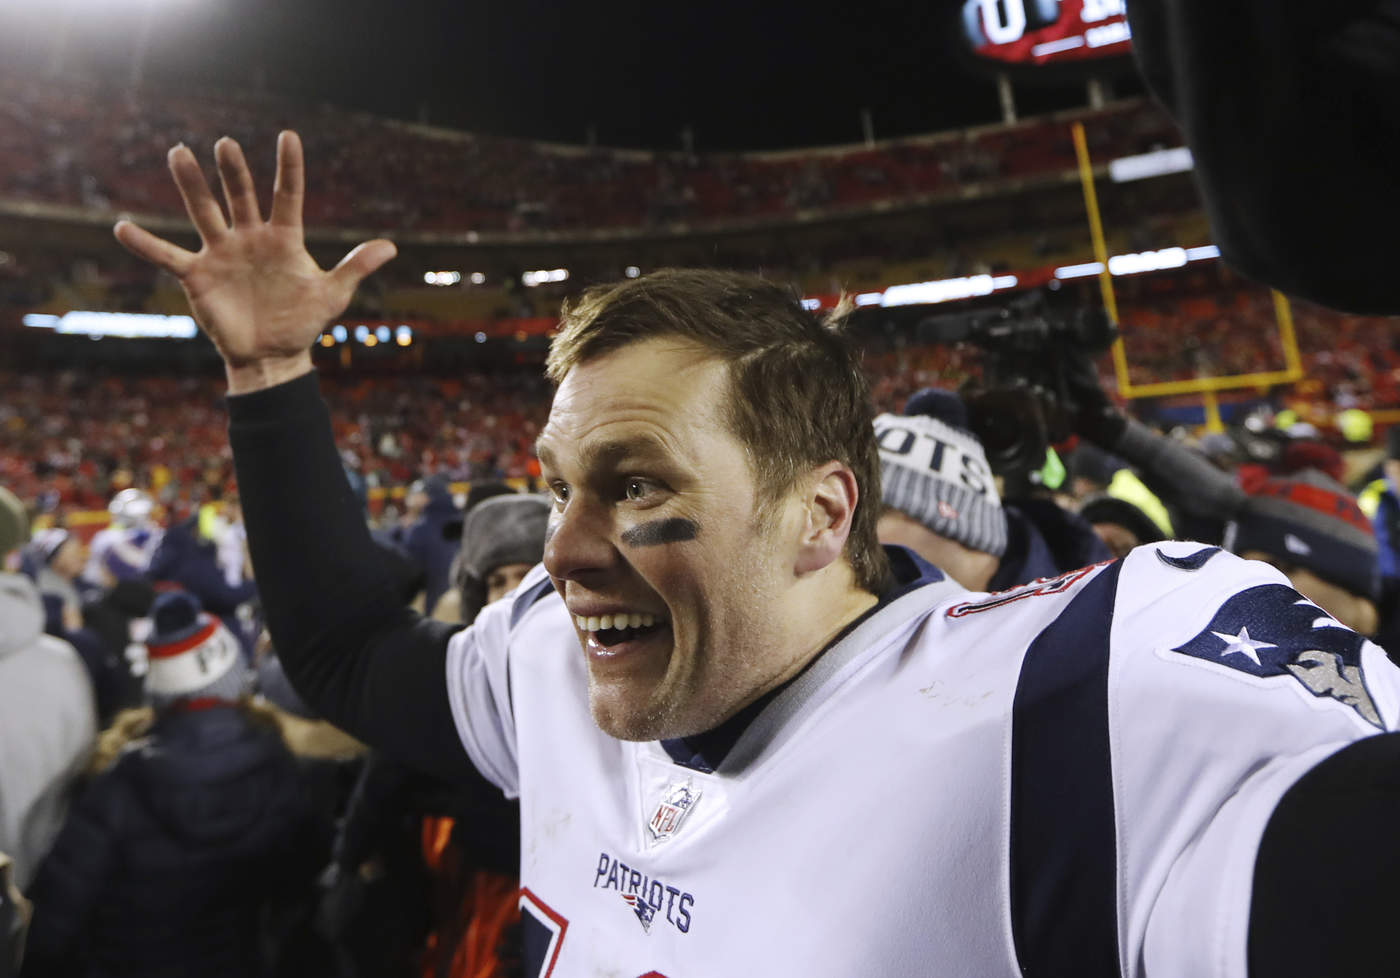 El mariscal de campo Tom Brady jugará el noveno Super Bowl en su carrera como profesional.